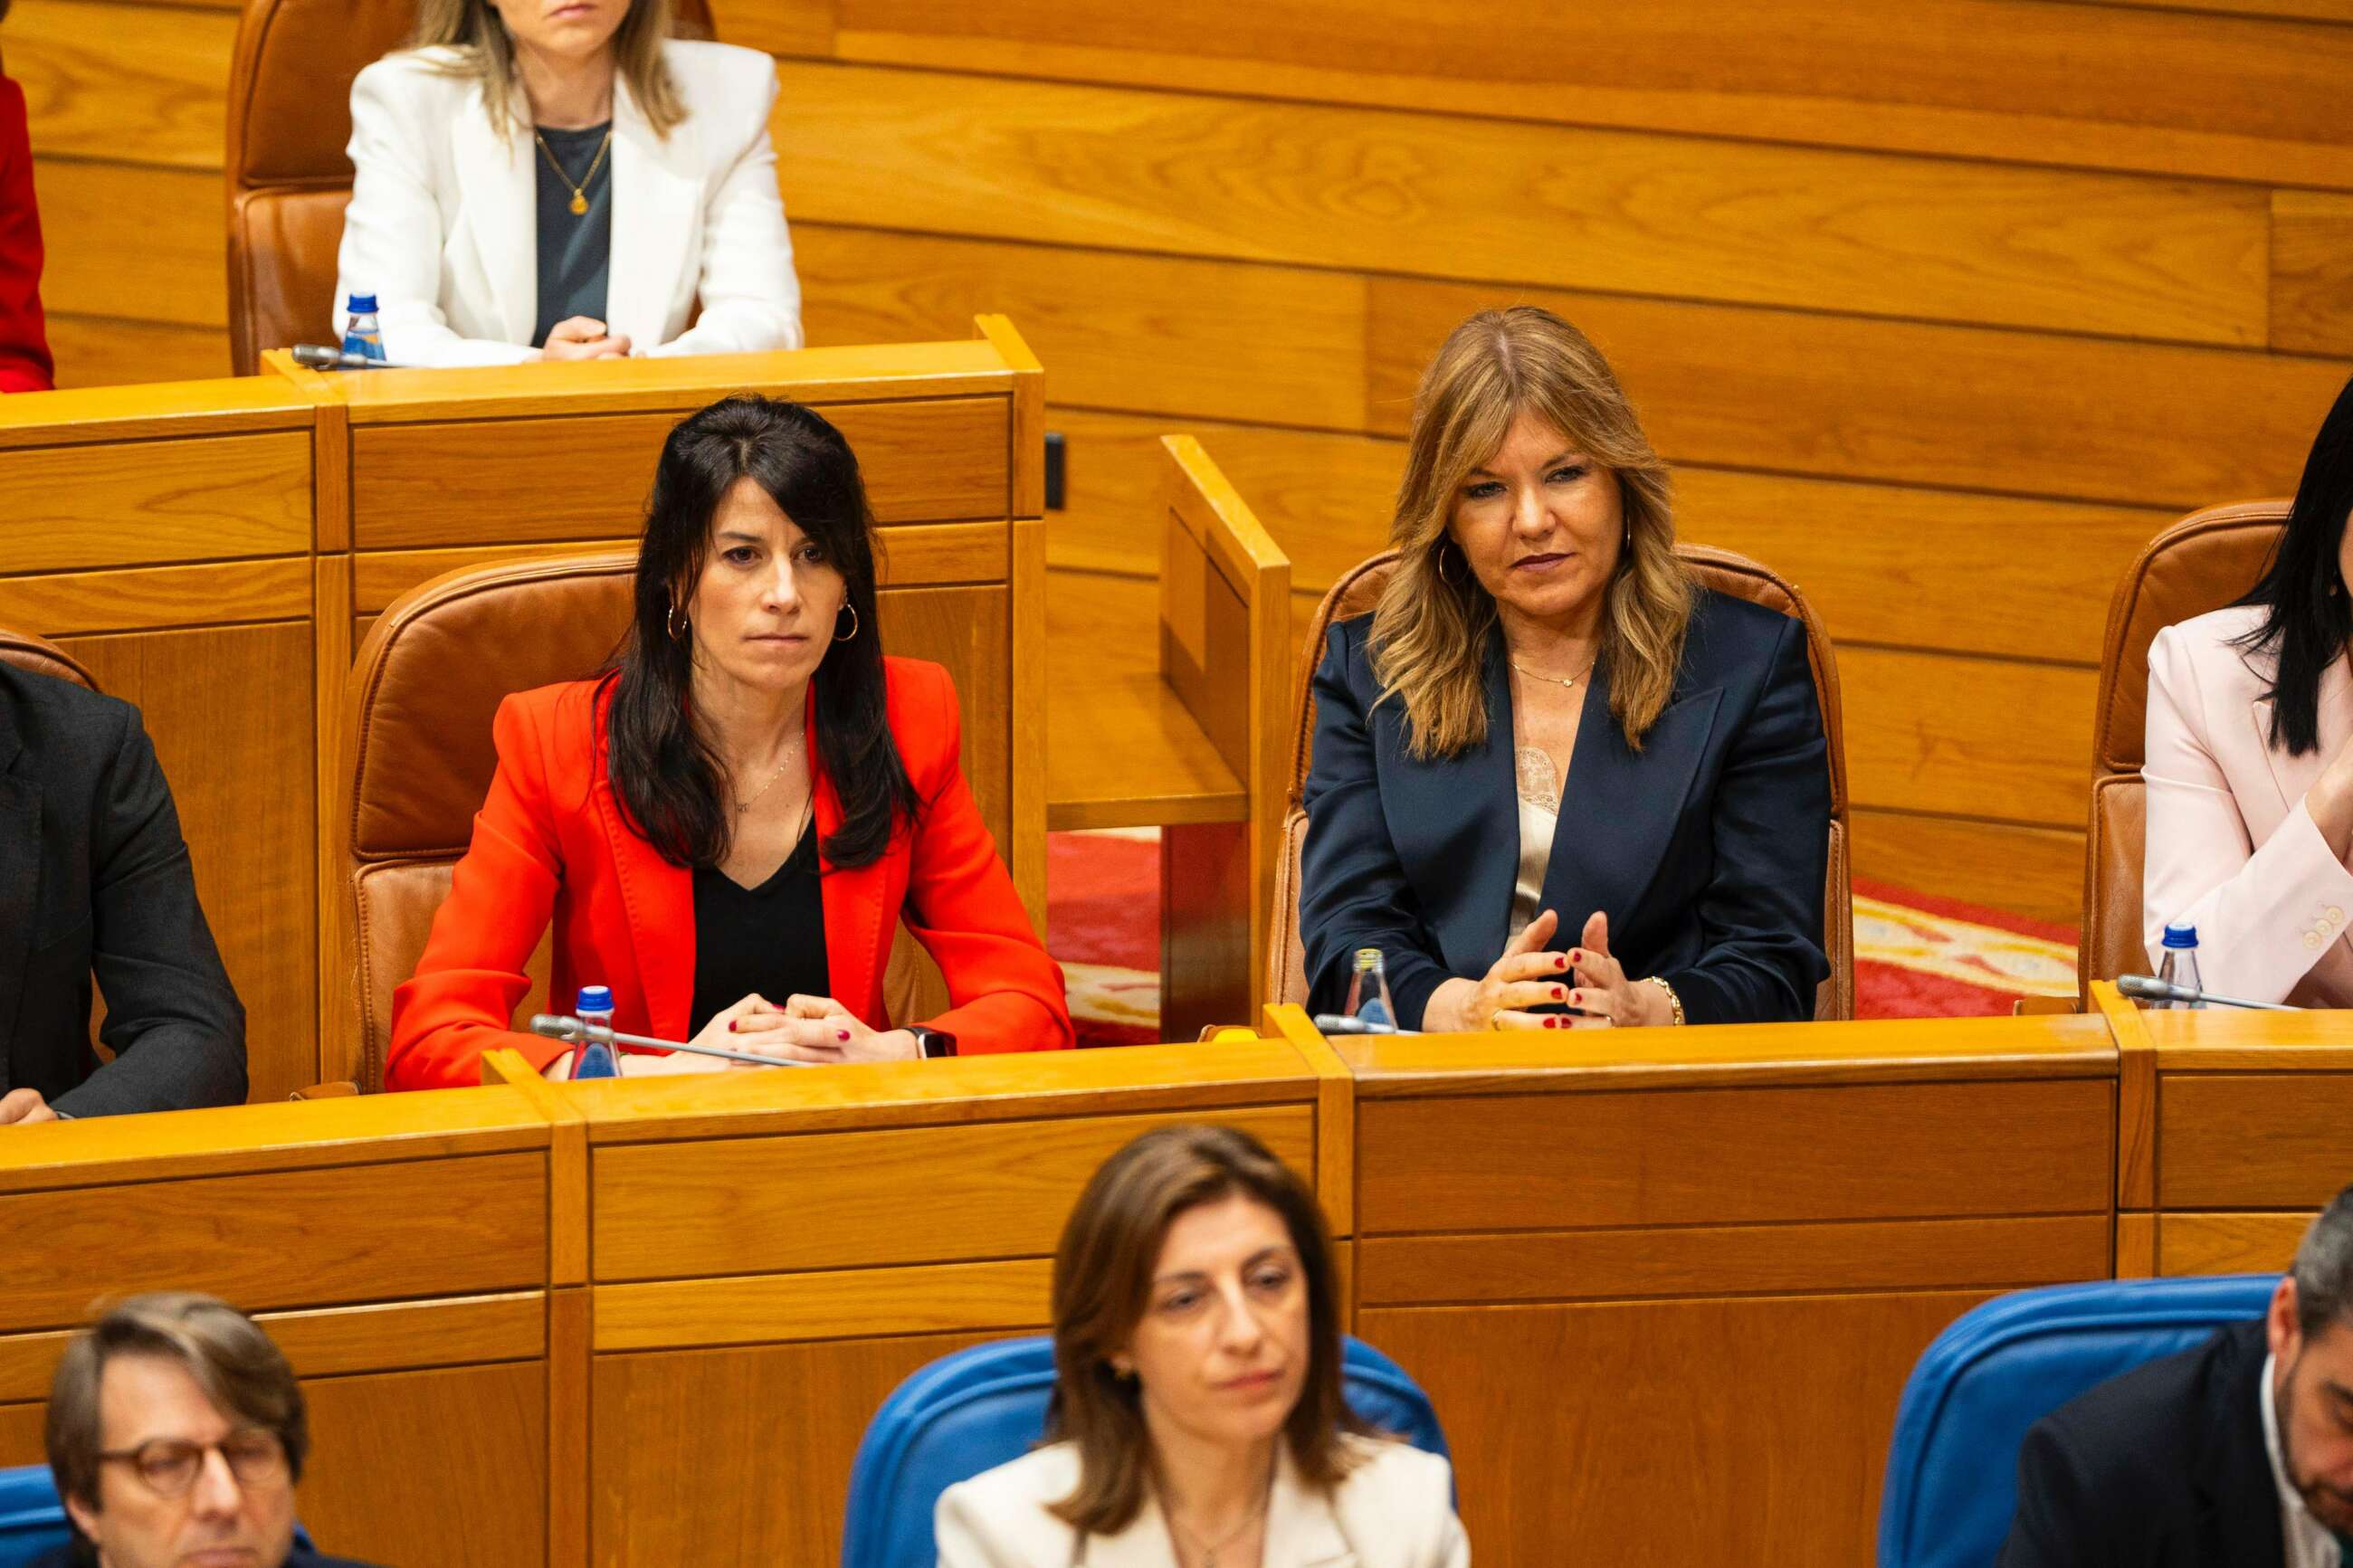 María Martínez Allegue, con chaqueta roja, en el Parlamento de Galicia / Cuenta de X de María Martínez Allegue